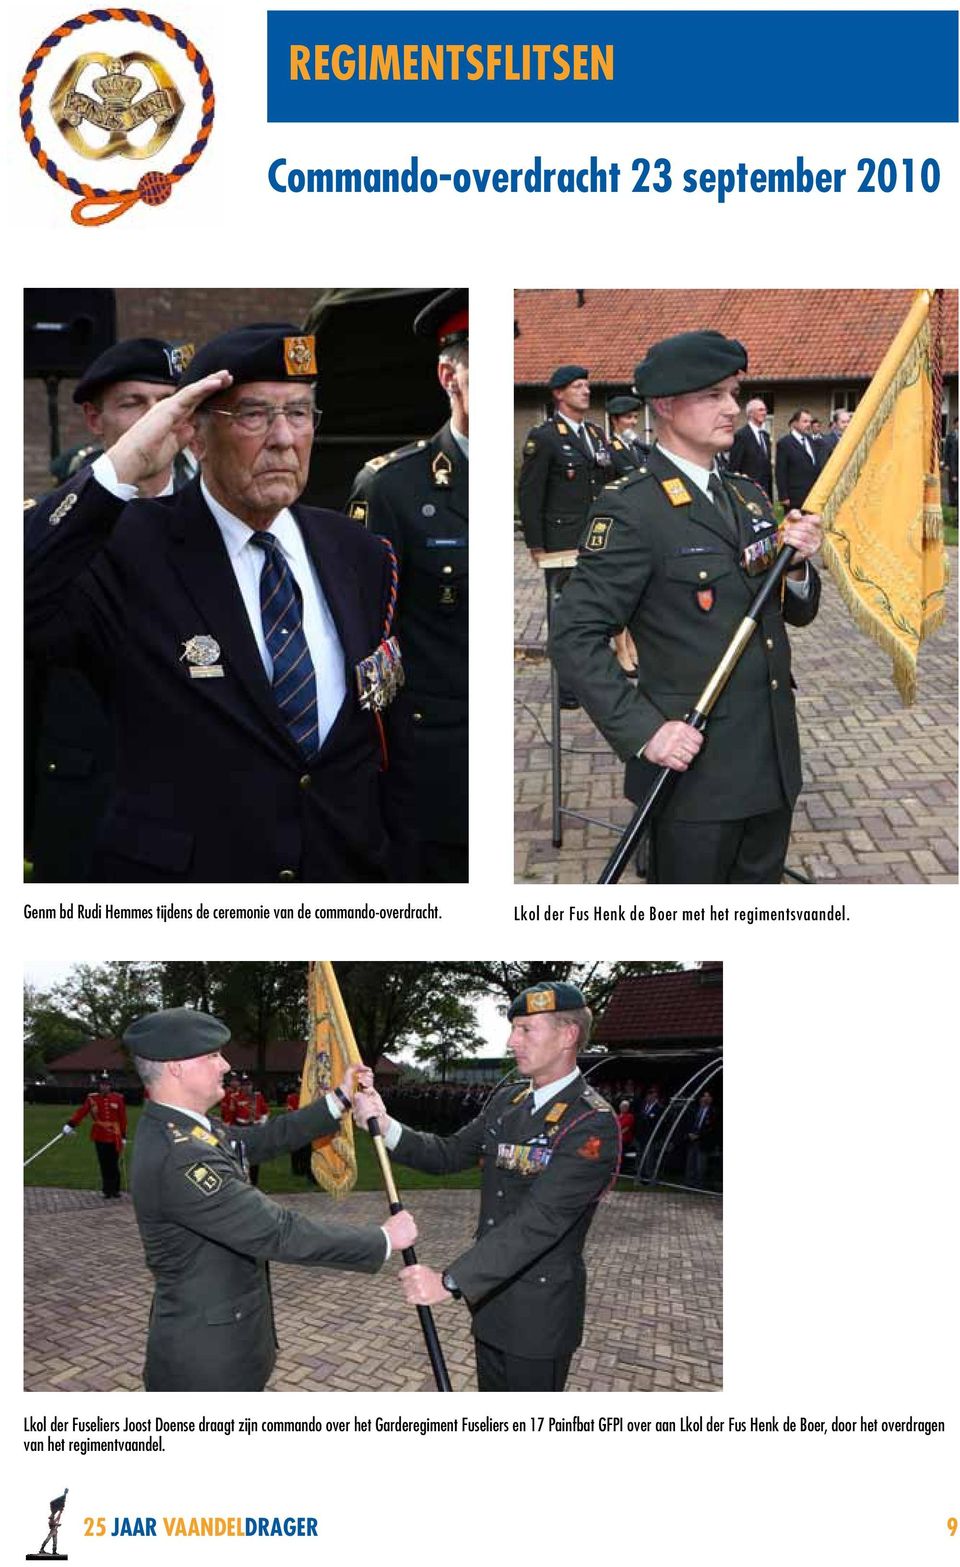 Lkol der Fuseliers Joost Doense draagt zijn commando over het Garderegiment Fuseliers en 17